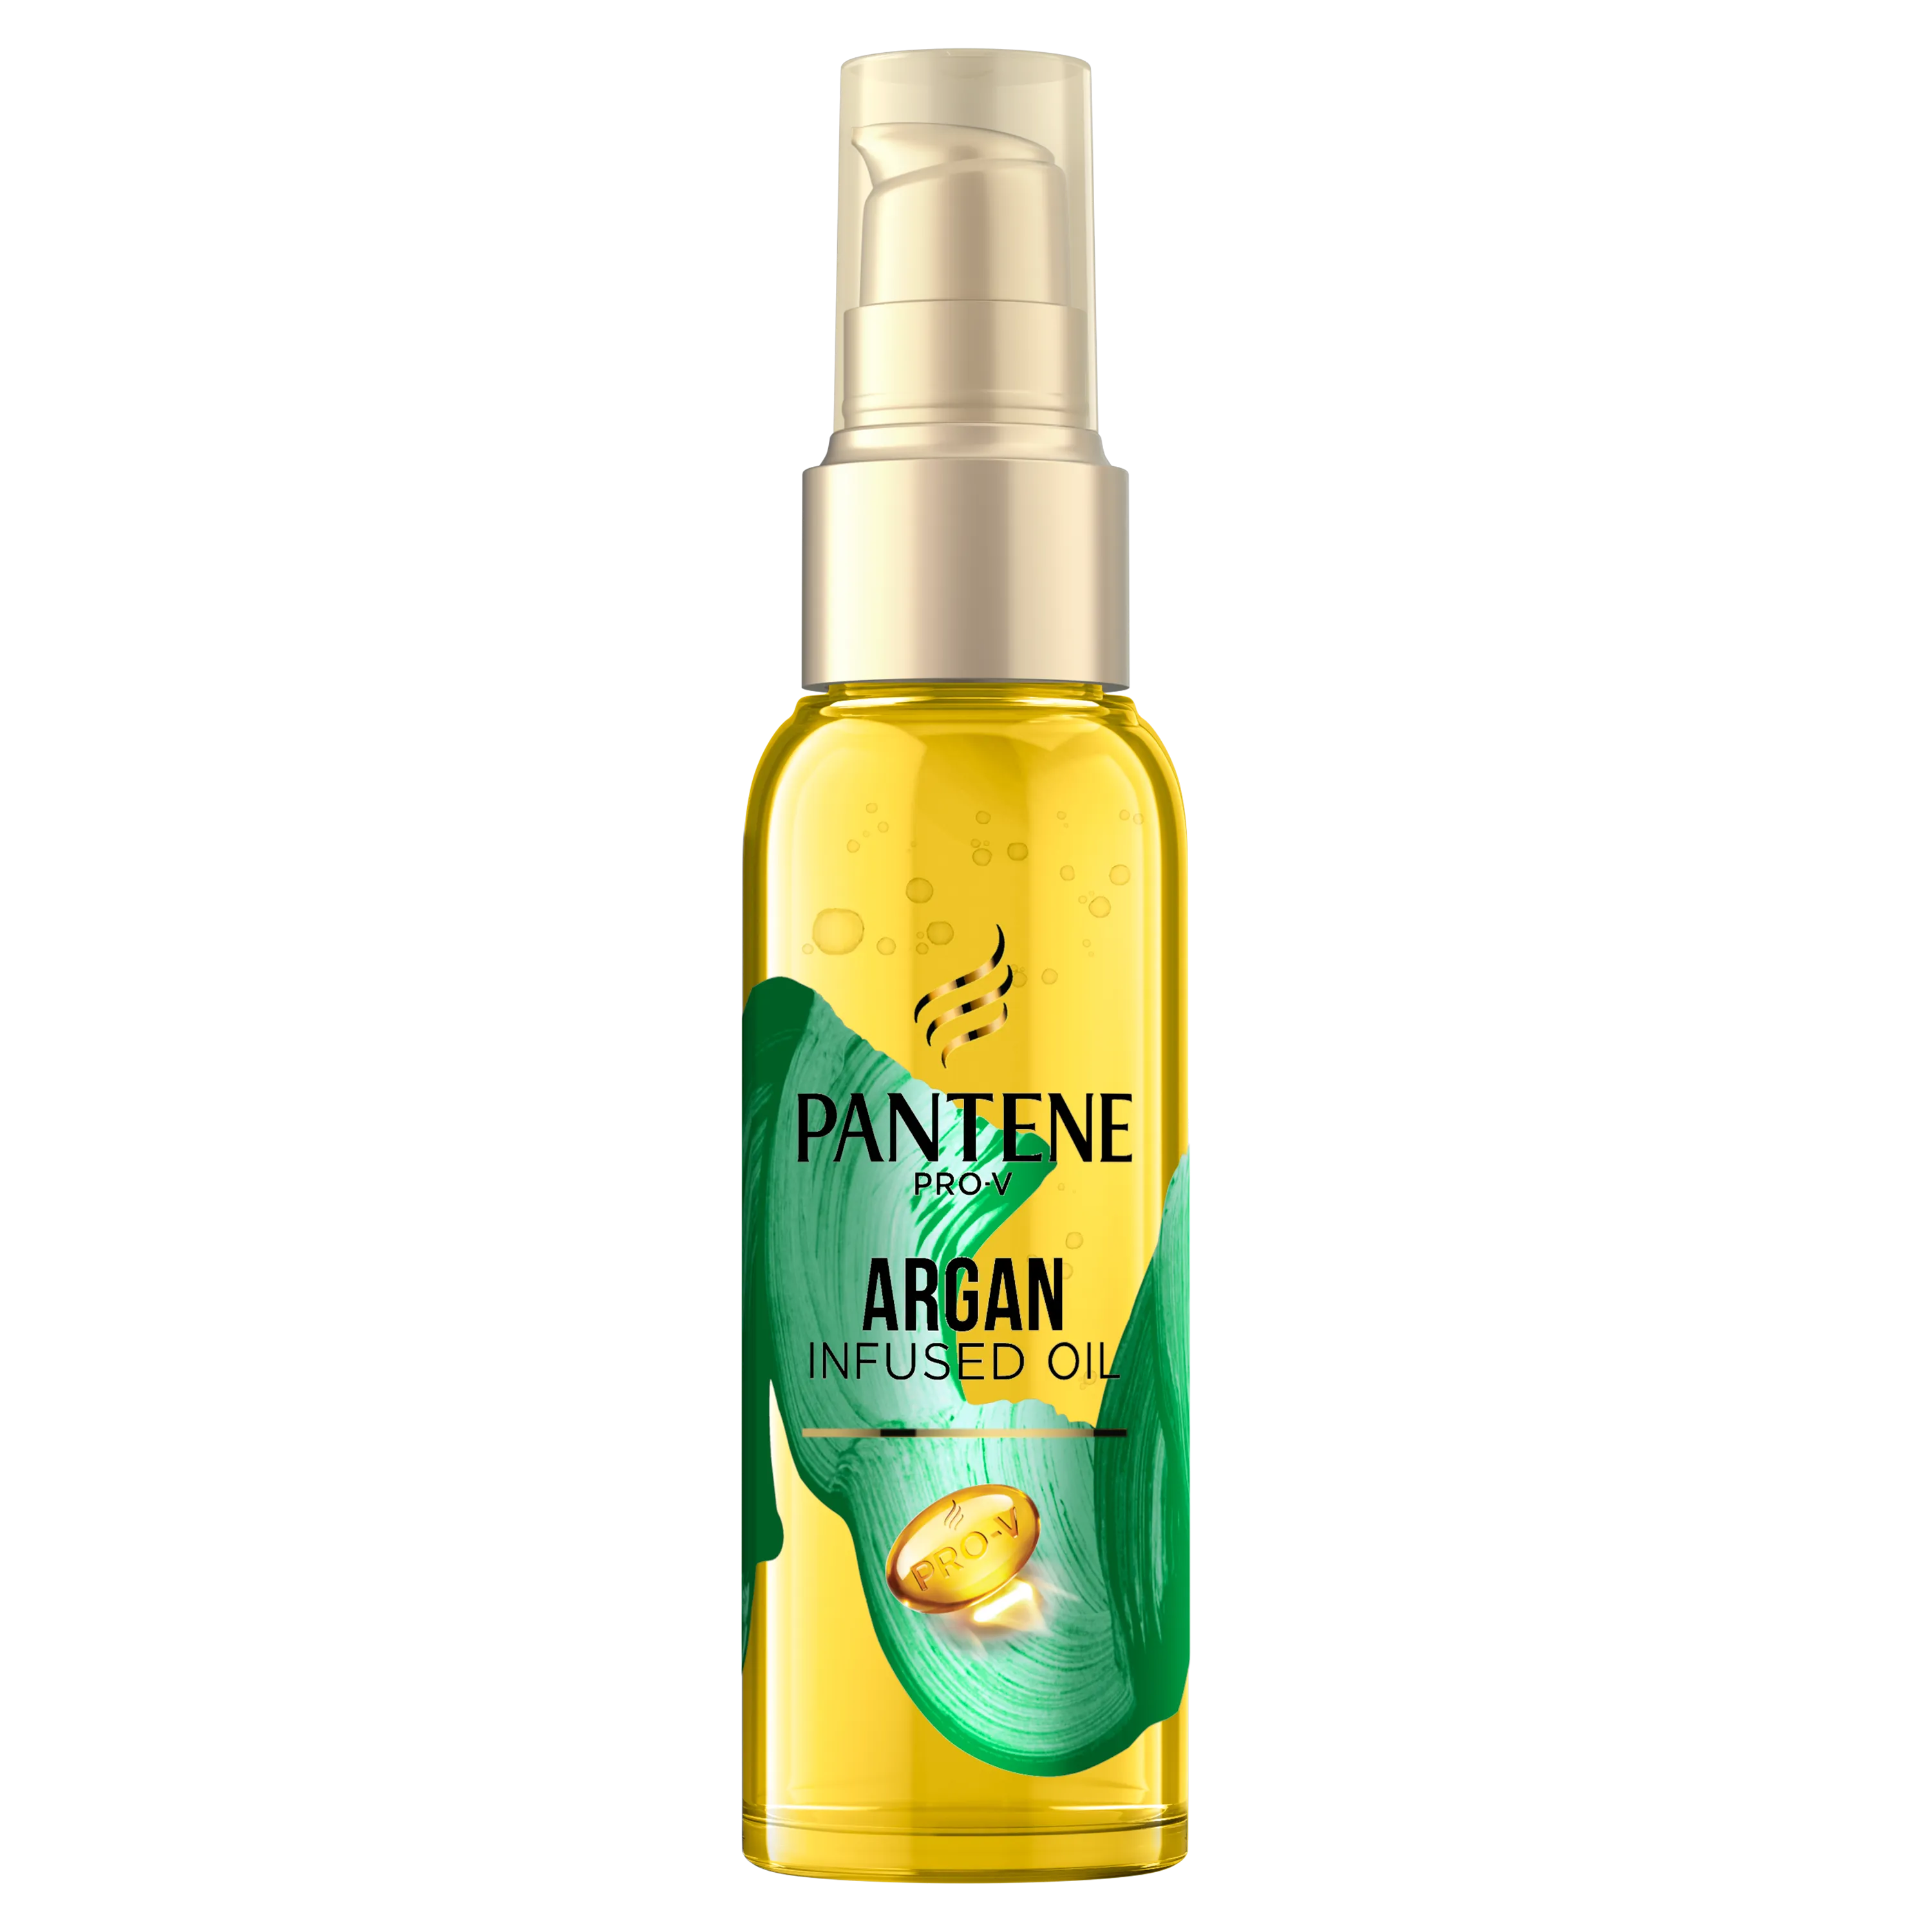 Pantene Pro-V olejek ochronny do włosów z olejem arganowym, 100 ml